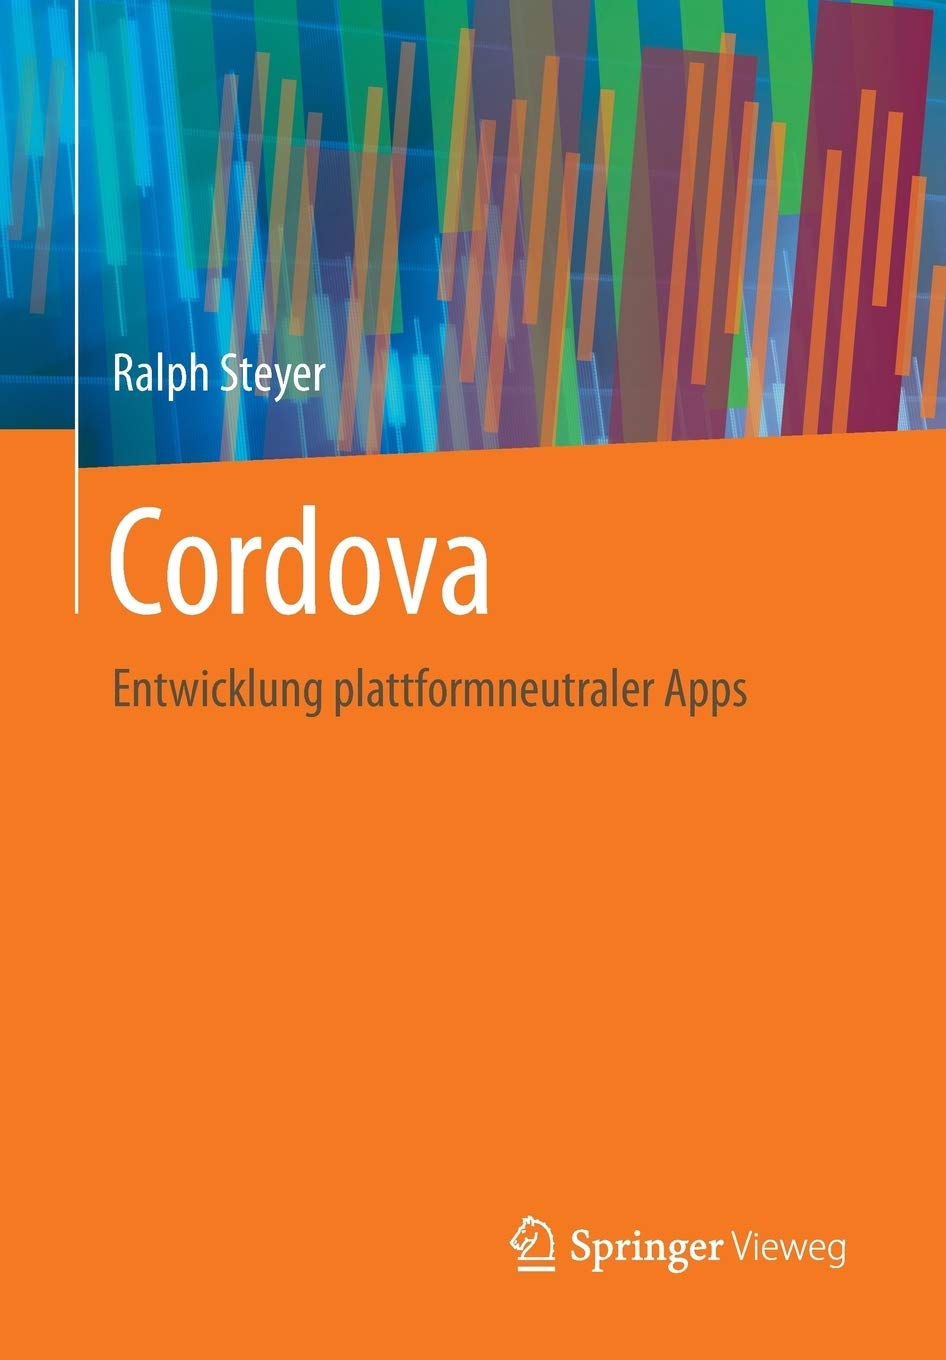 Cordova: Entwicklung plattformneutraler Apps (German Edition)